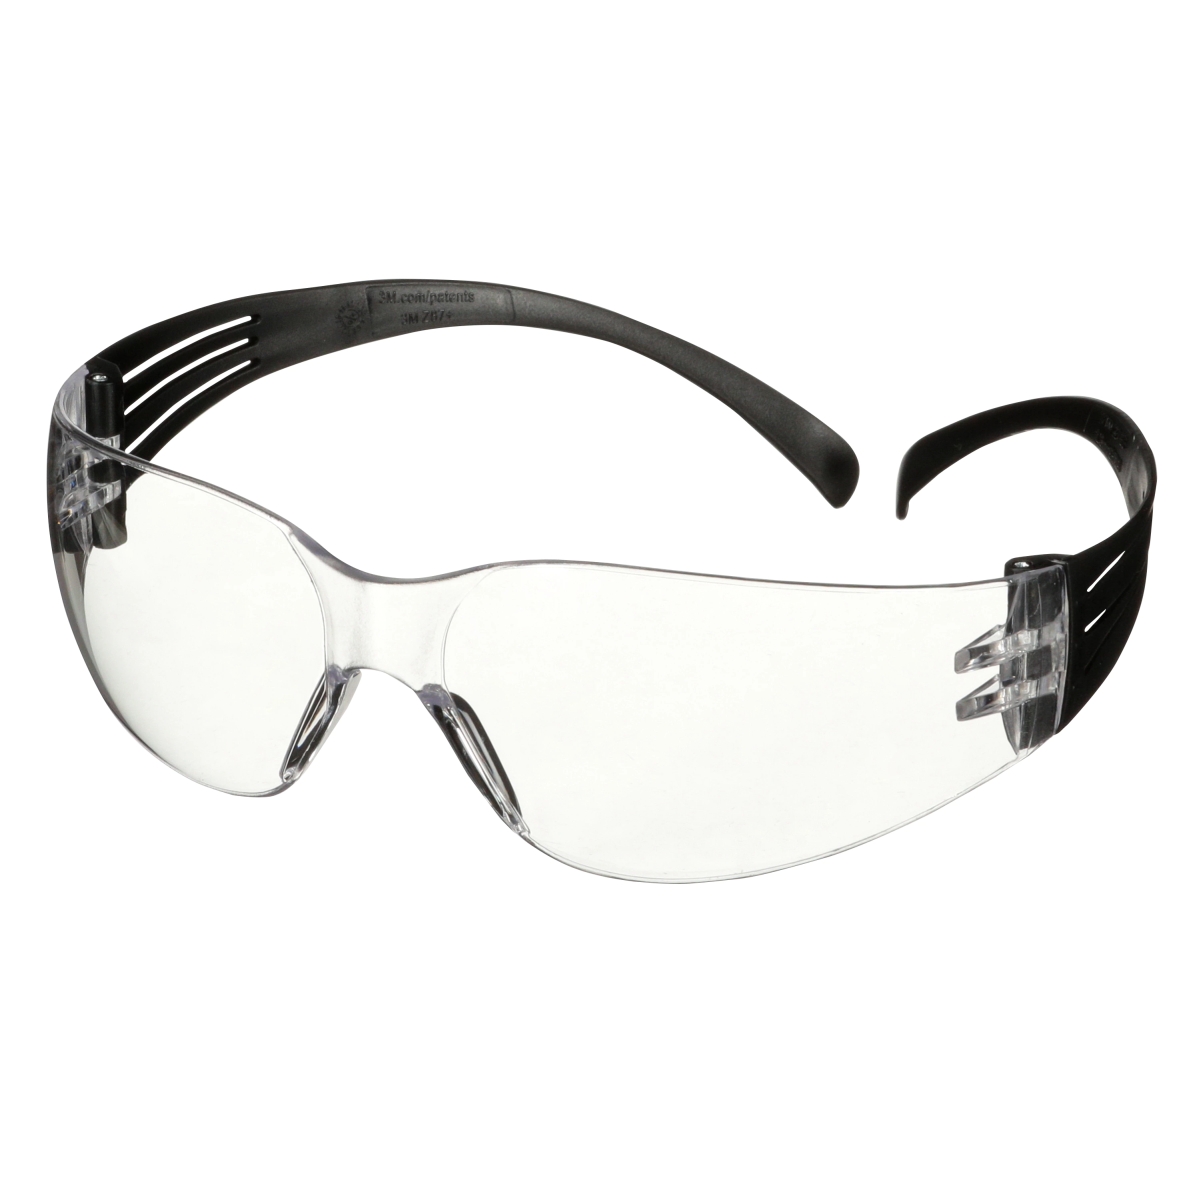 Occhiali di sicurezza 3M SecureFit 100, aste nere, rivestimento antigraffio, lenti chiare, SF101AS-BLK